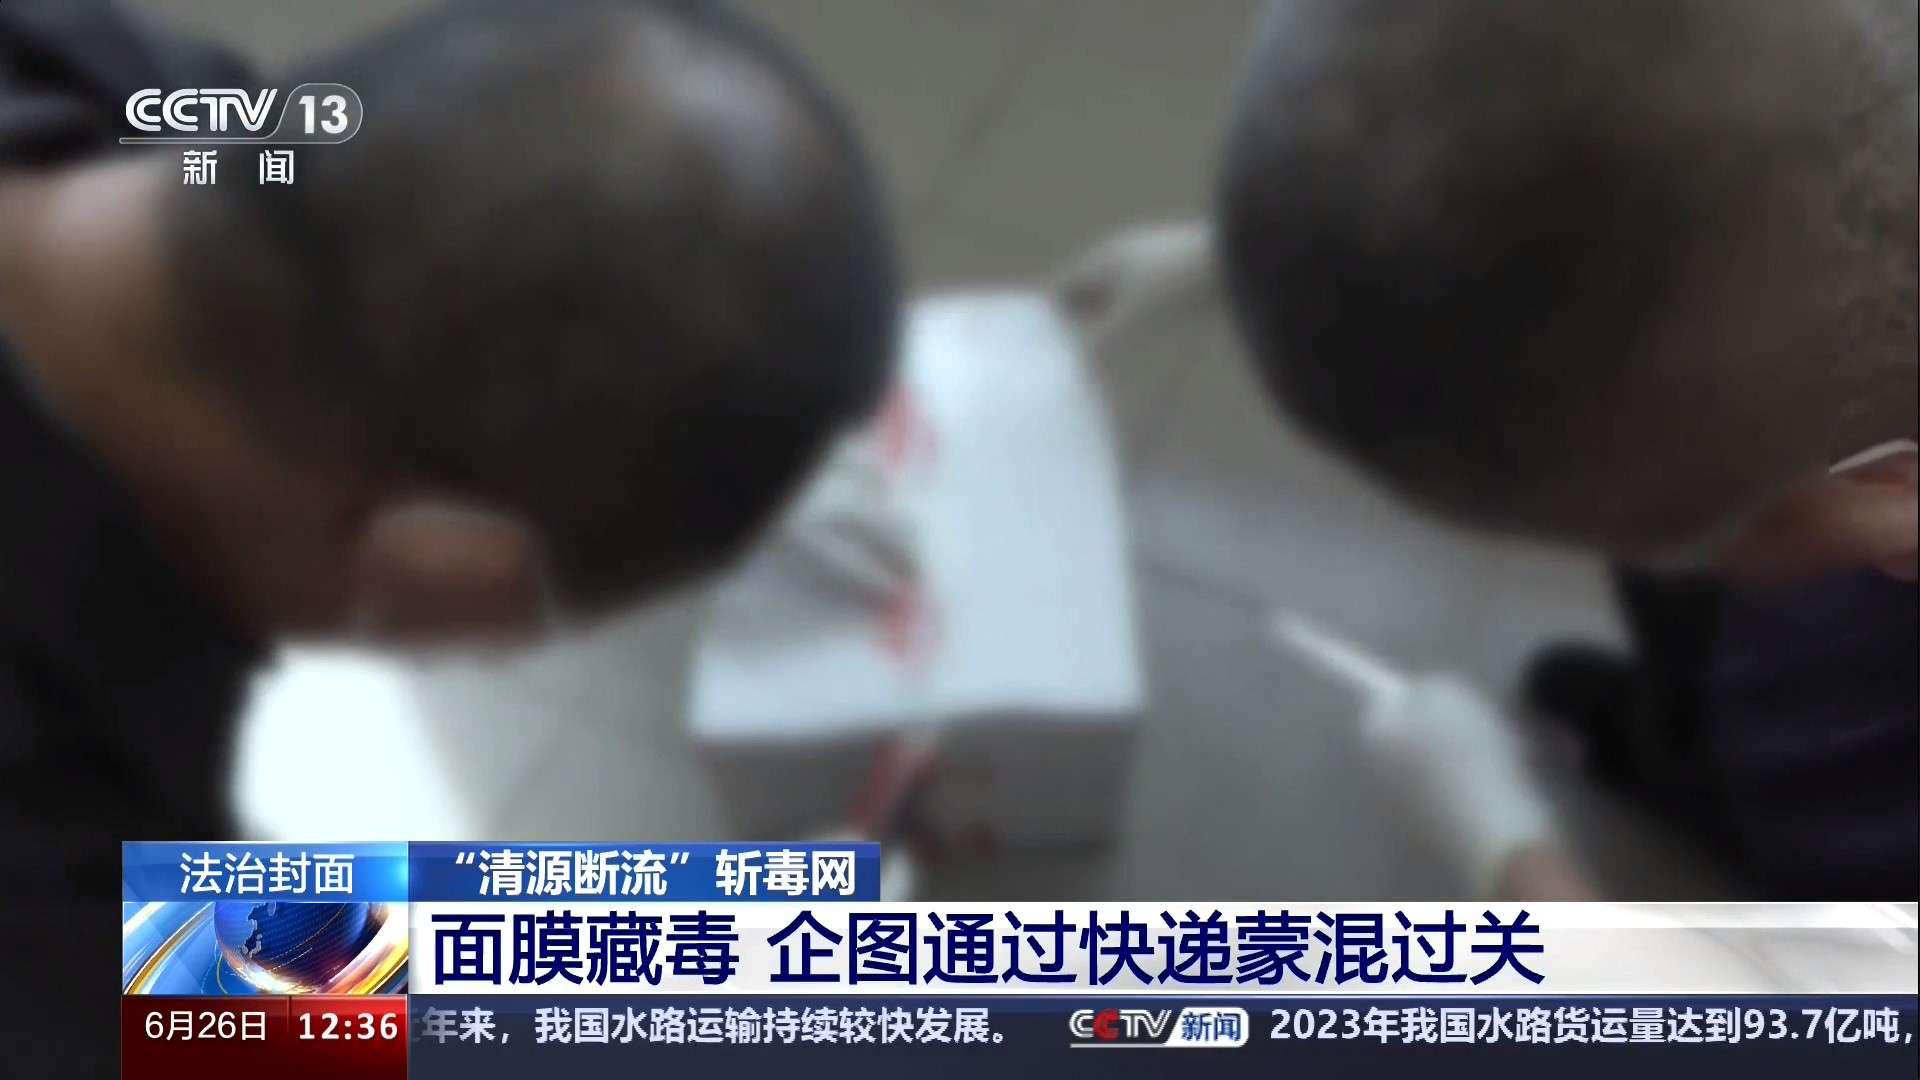 中央电视台CCTV-13新闻频道 法治在线 “清源断流”斩毒网.